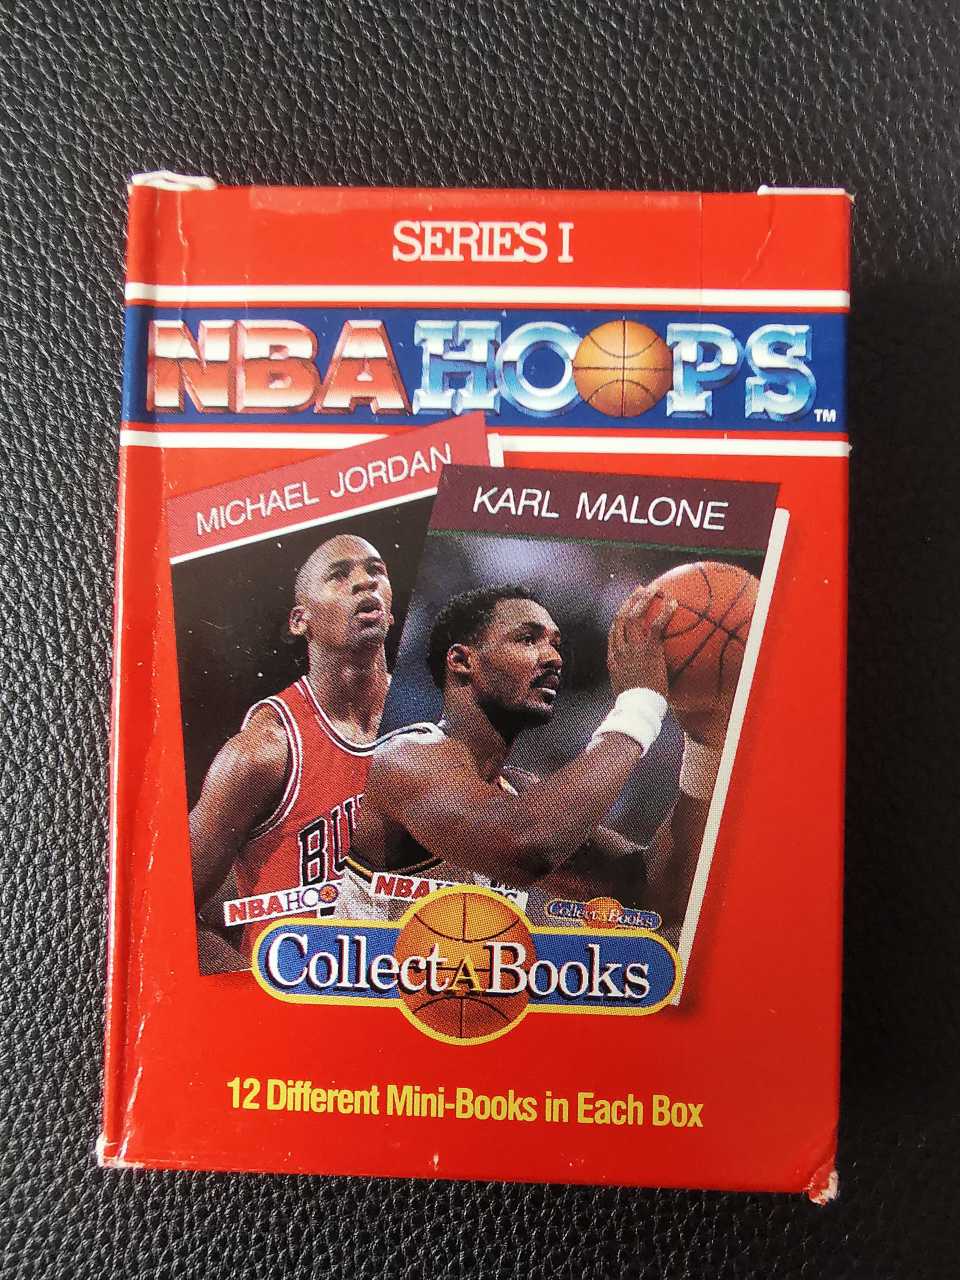 【金矿卡社】1990 HOOPS NBA 超稀有 MINI-BOOKS小书盒卡红色版 内含12 小书 此版可得 迈克尔 乔丹 Michael Jordan 卡尔马龙 等超级巨星 极为稀少价格极高 小天